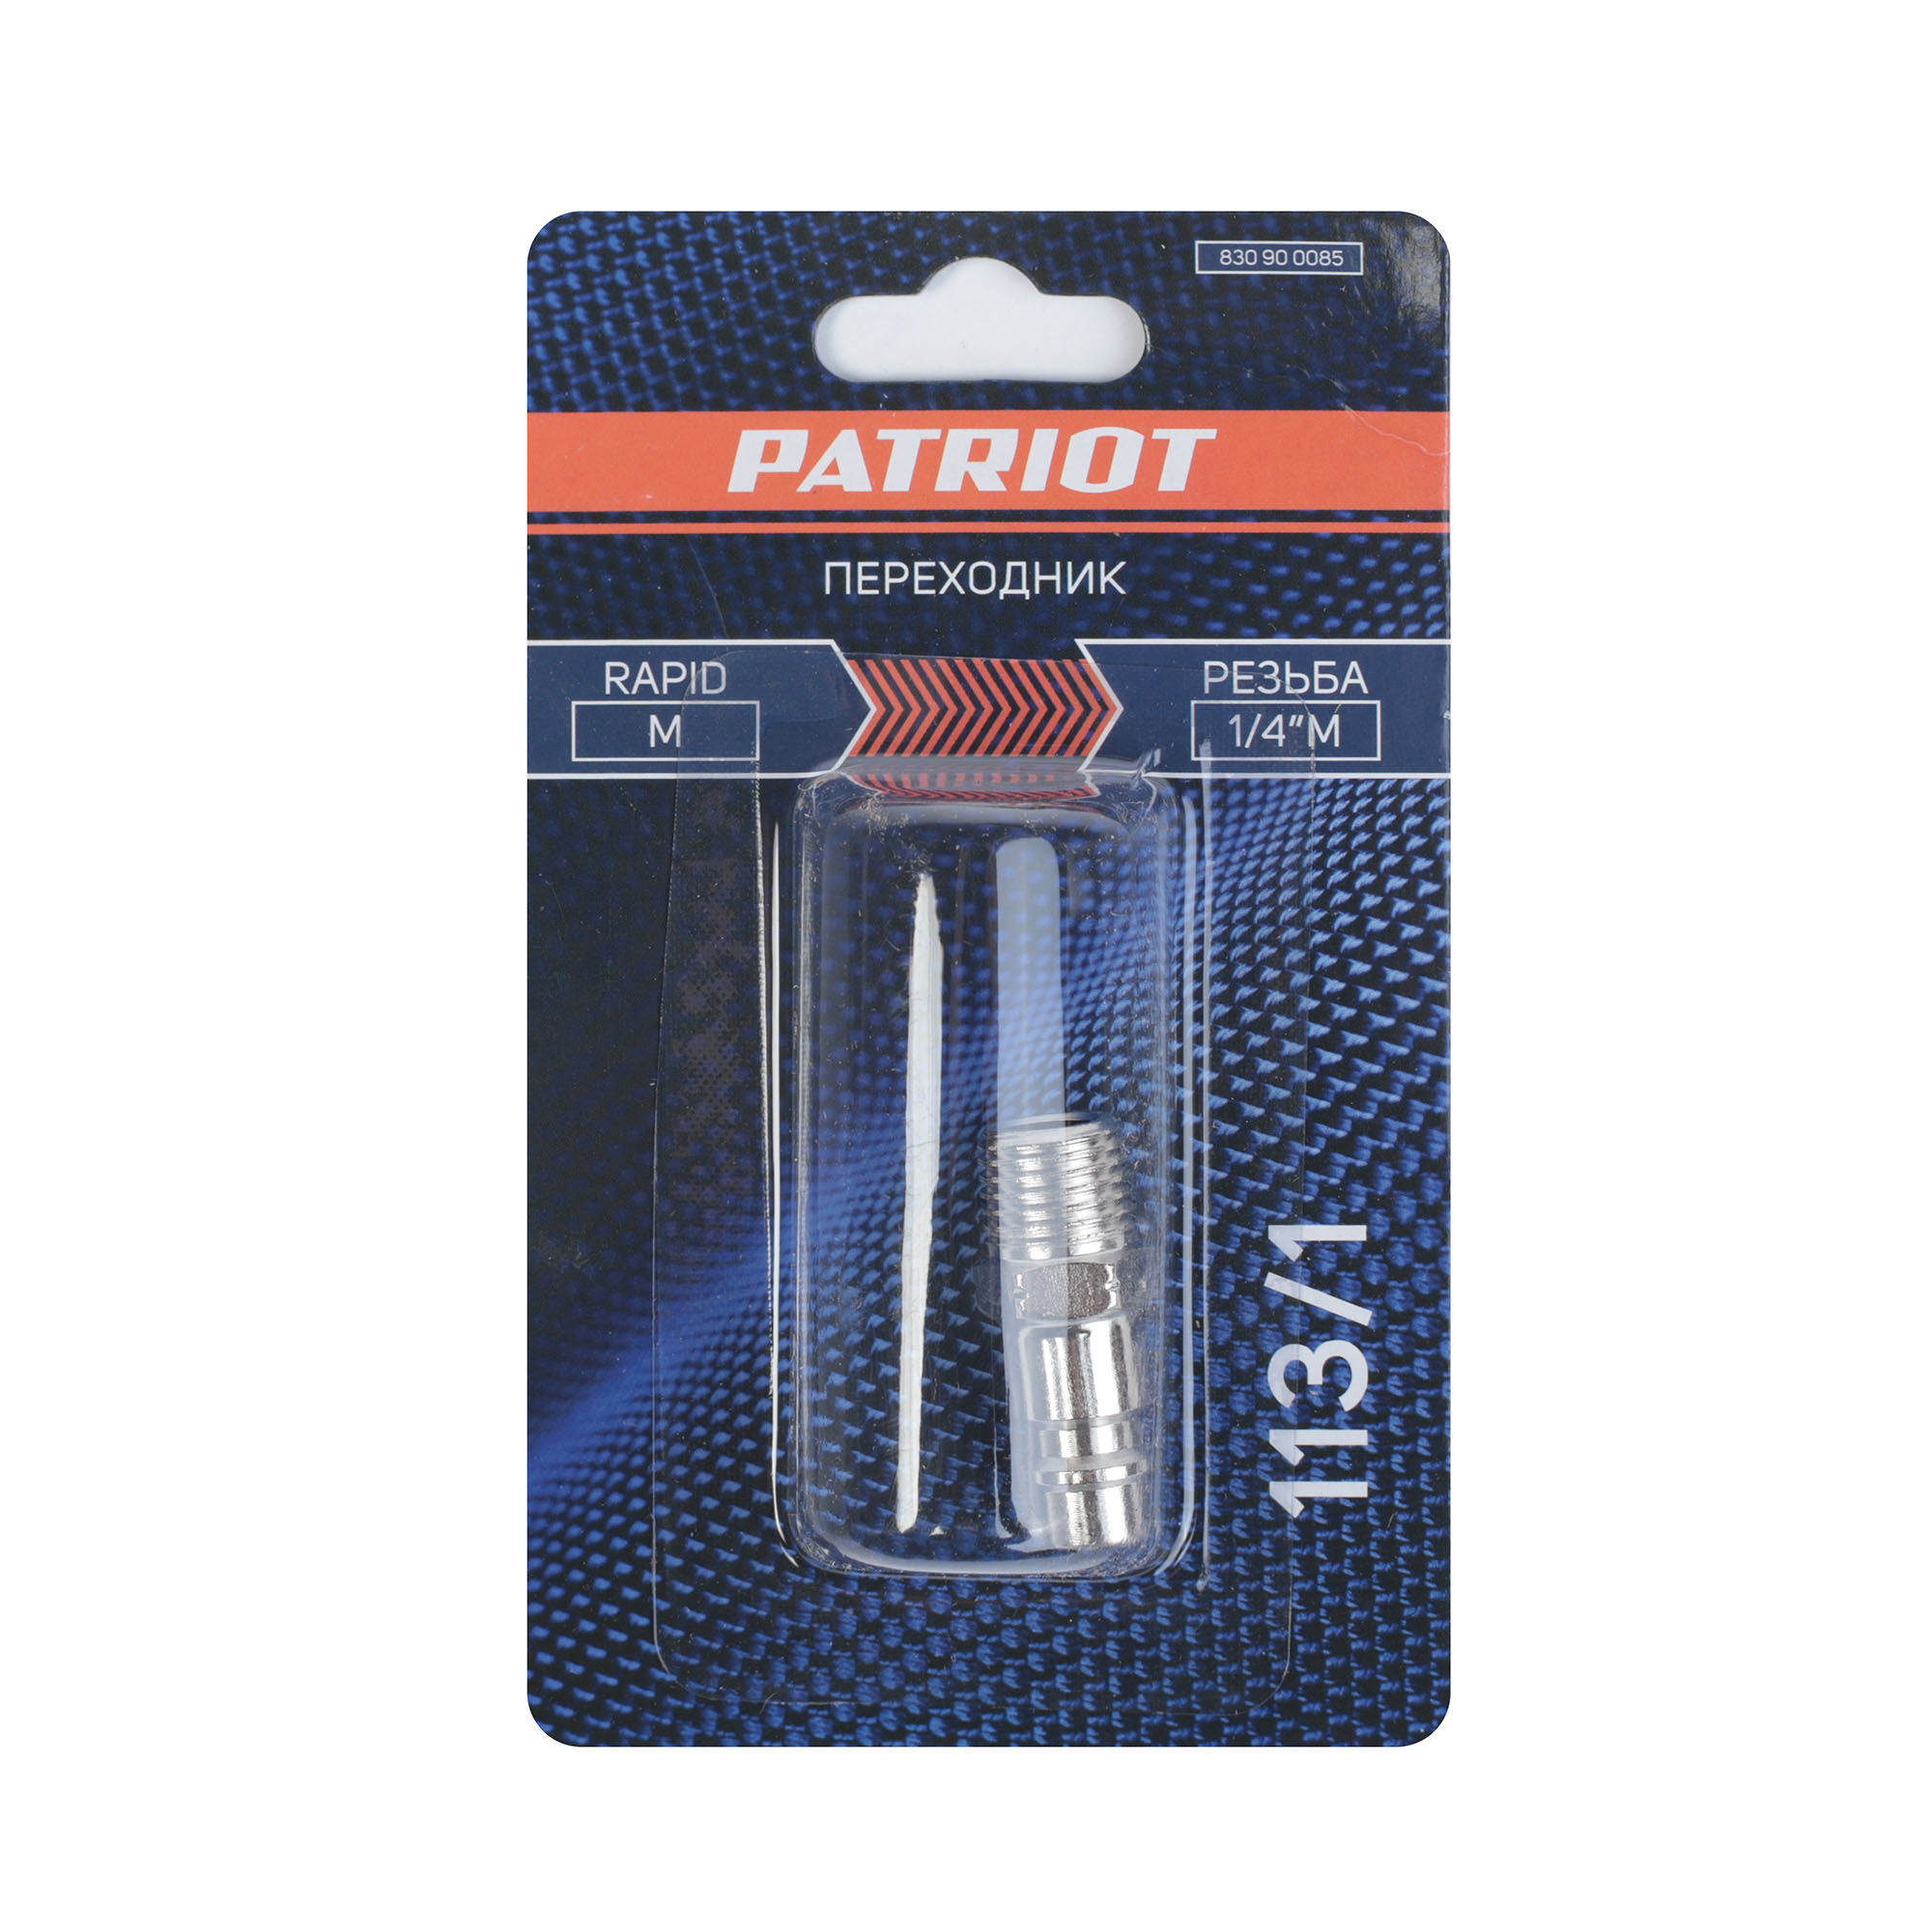 Переходник Patriot 113/1 (Rapid 1/4quot; M) 5